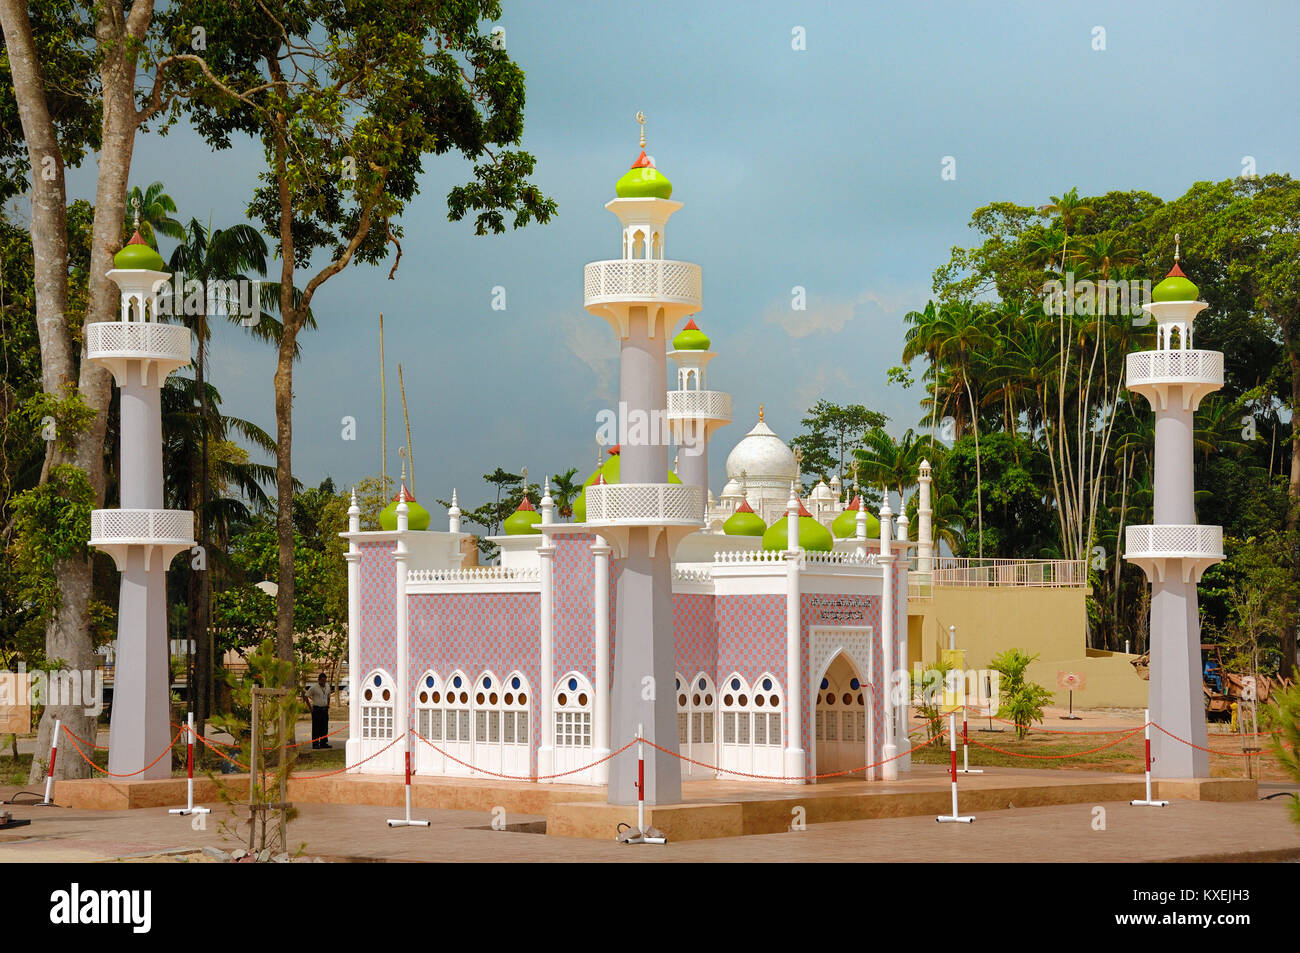 Modello in scala o la replica della Moschea centrale di Pattani, Thailandia presso il patrimonio islamico Park o il parco a tema, Kuala Terengganu, Malaysia Foto Stock